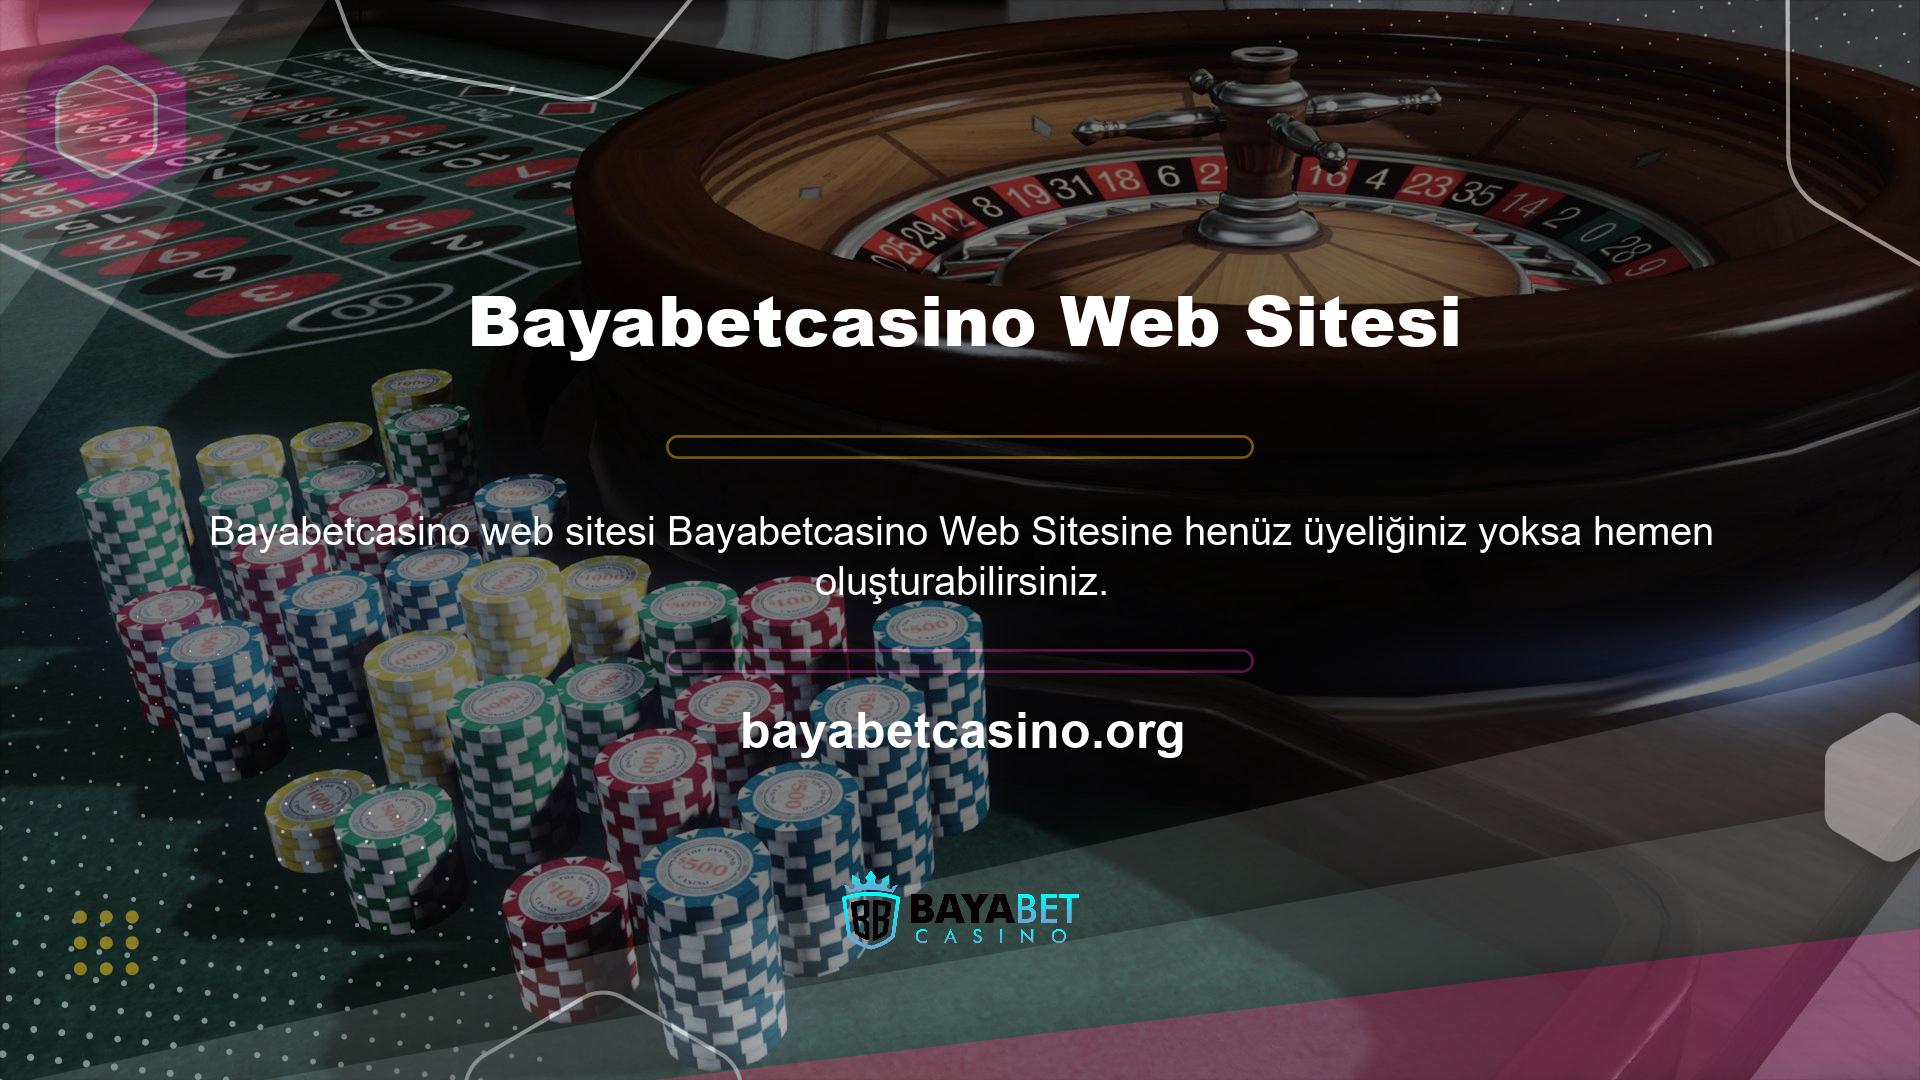 Bu etkinliklere katılmak için lütfen Bayabetcasino web sitesini ziyaret edin ve sağ üst köşedeki "Abone Ol" butonuna tıklayın